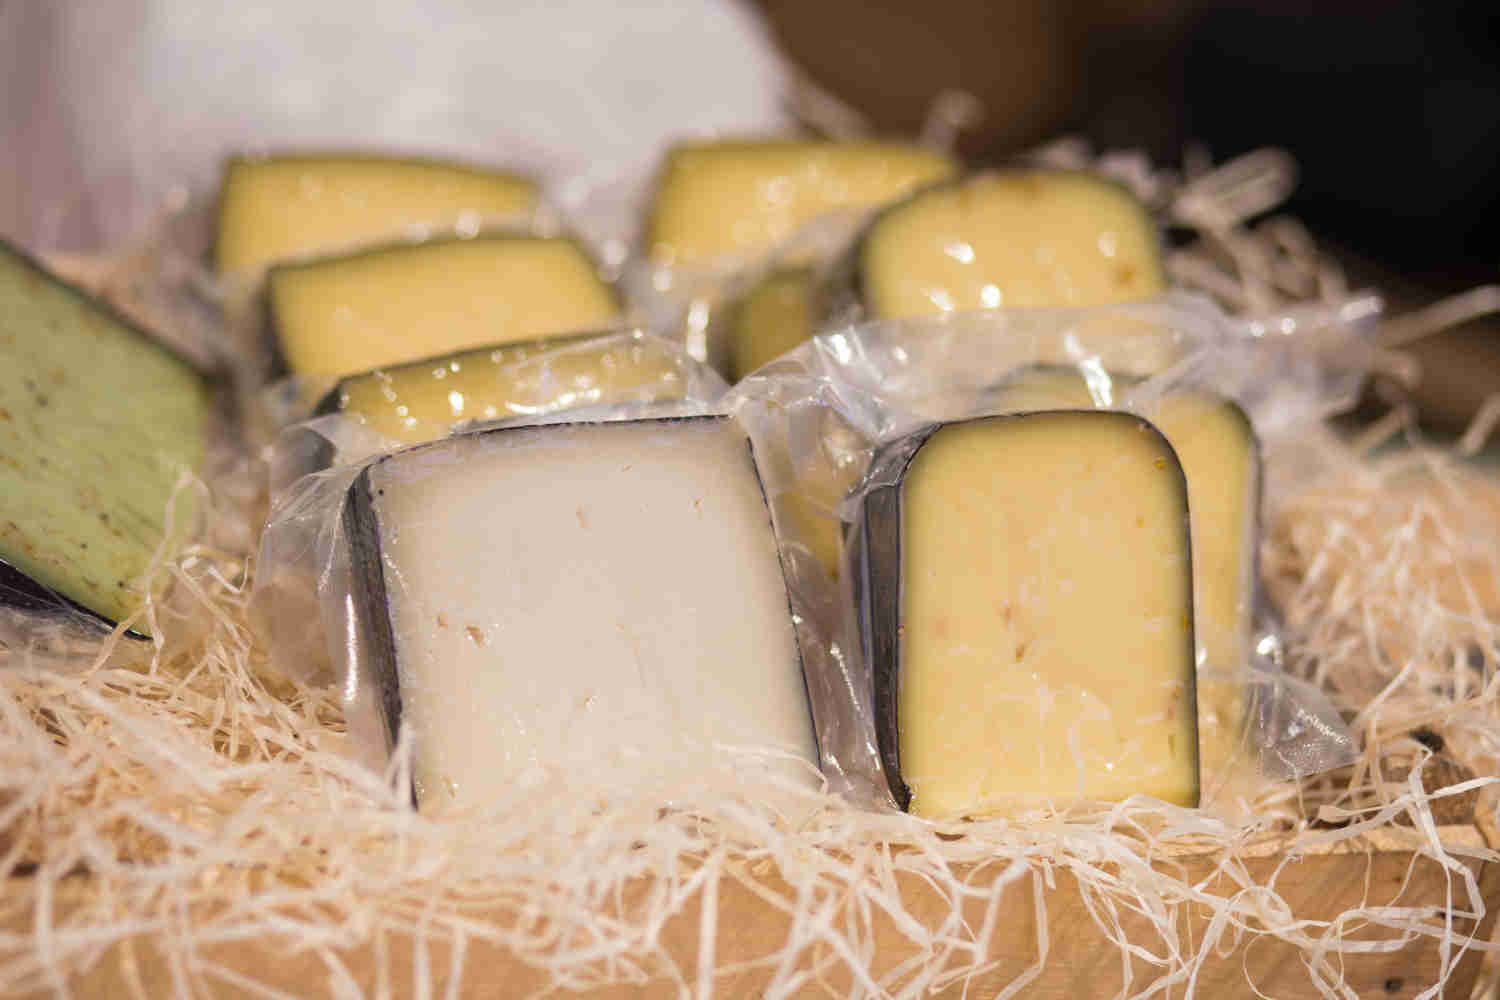 Come si conserva il formaggio sottovuoto?